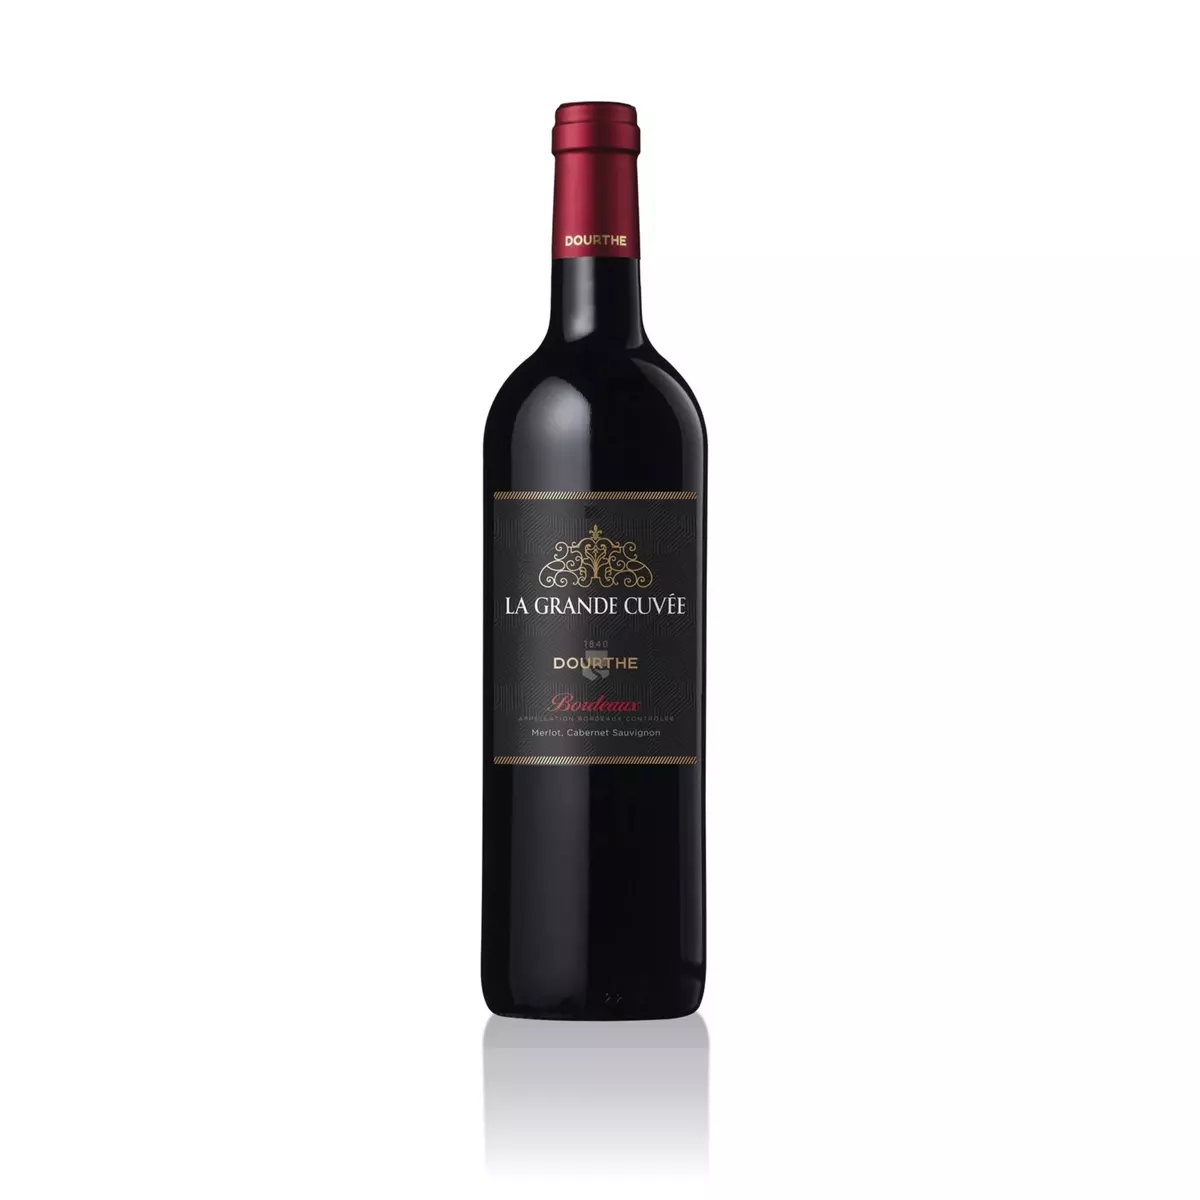 DOURTHE Vin rouge AOP Bordeaux La grande cuvée 75cl